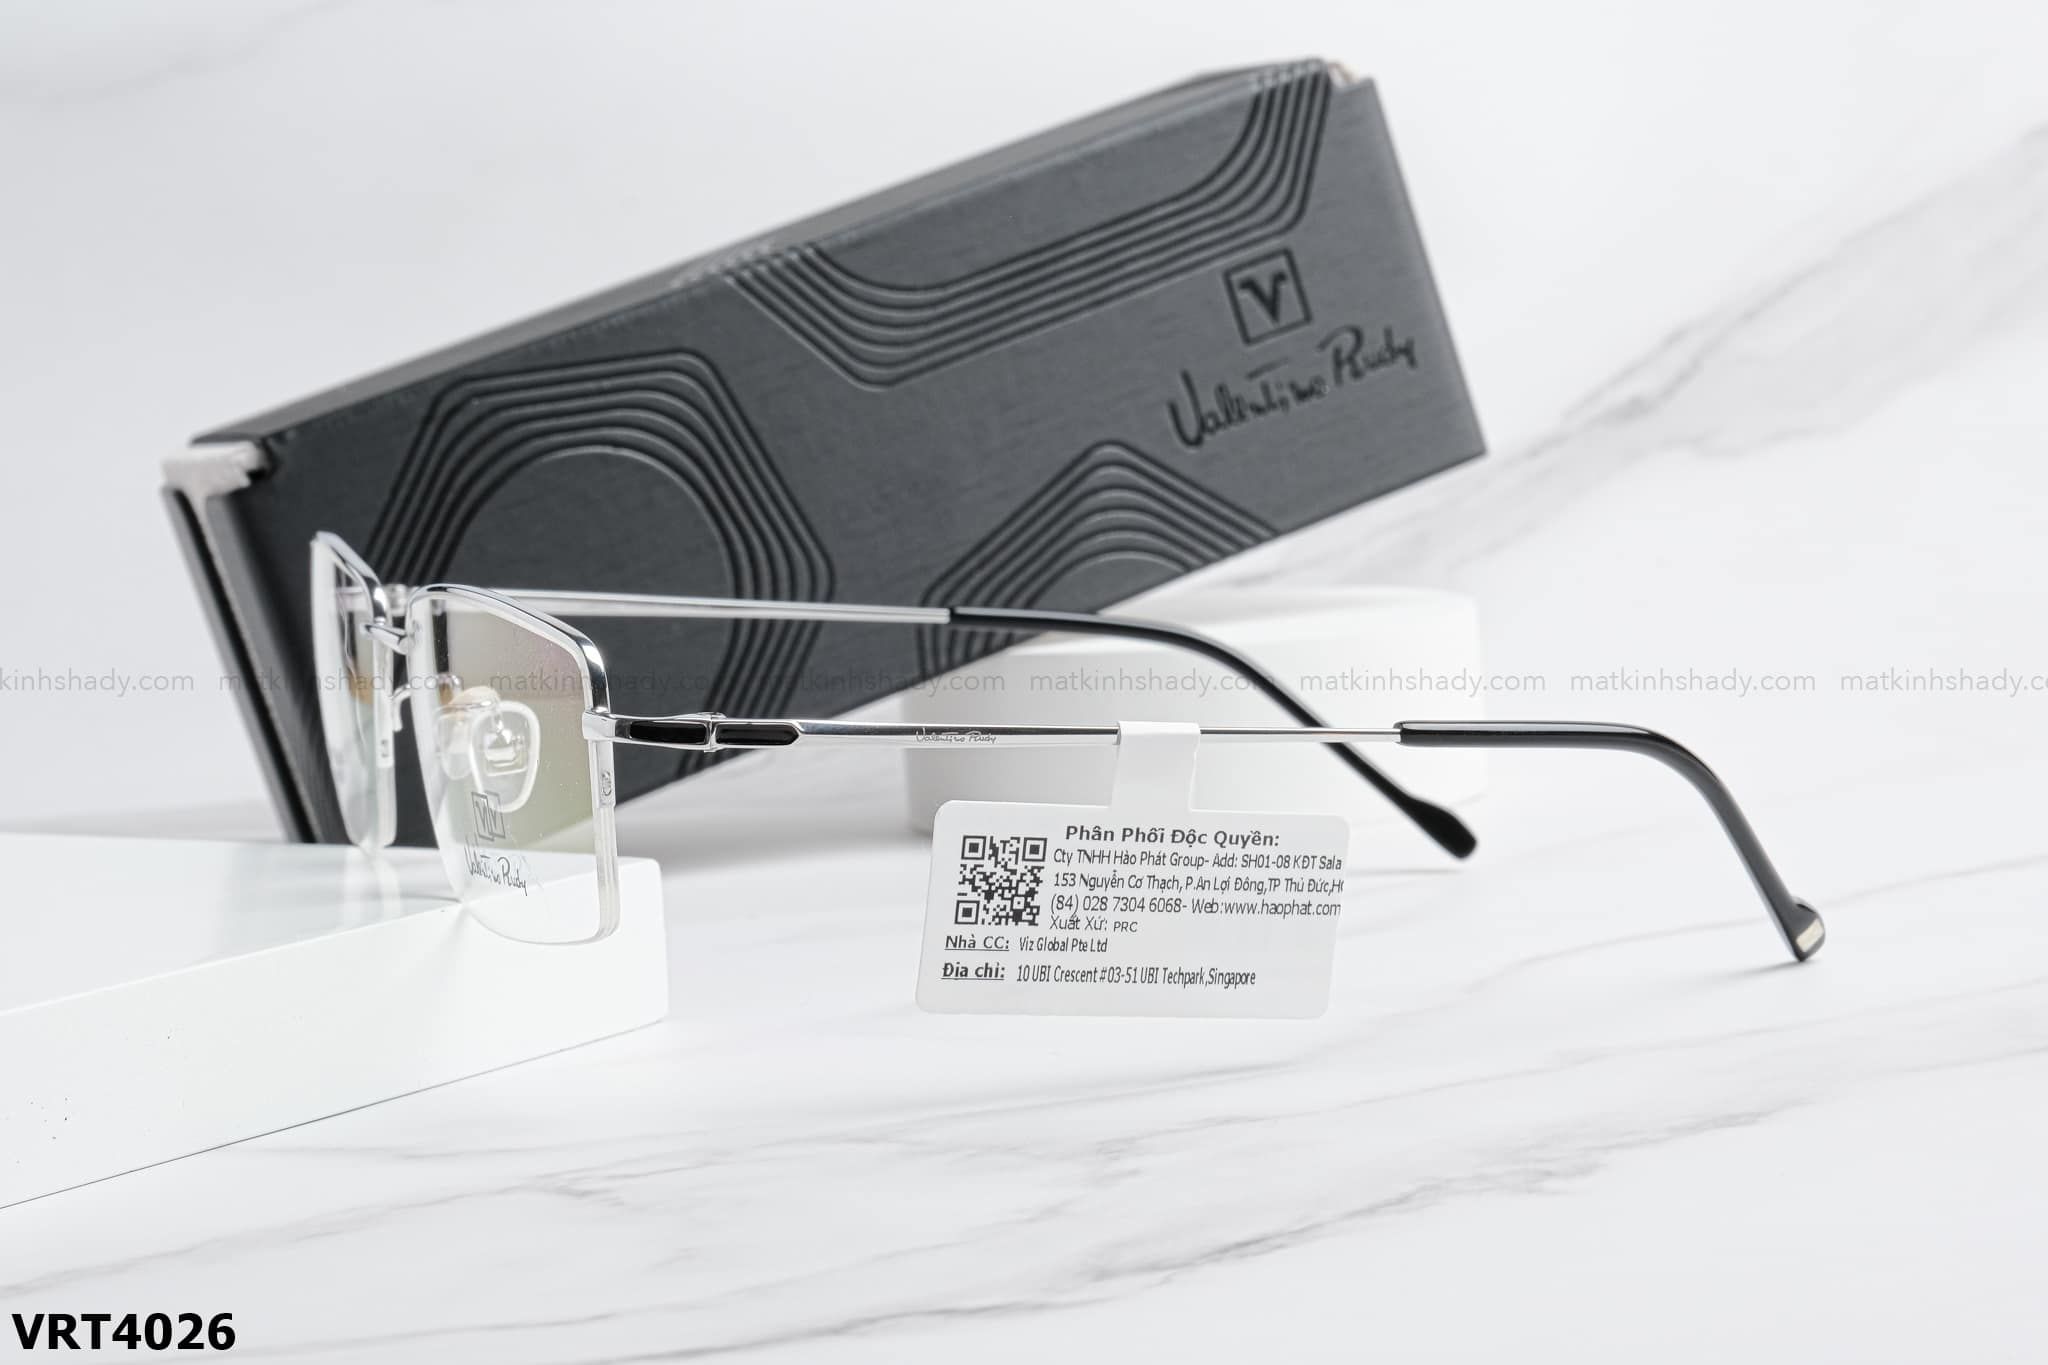  Valentino Eyewear - Glasses - VRT4026 